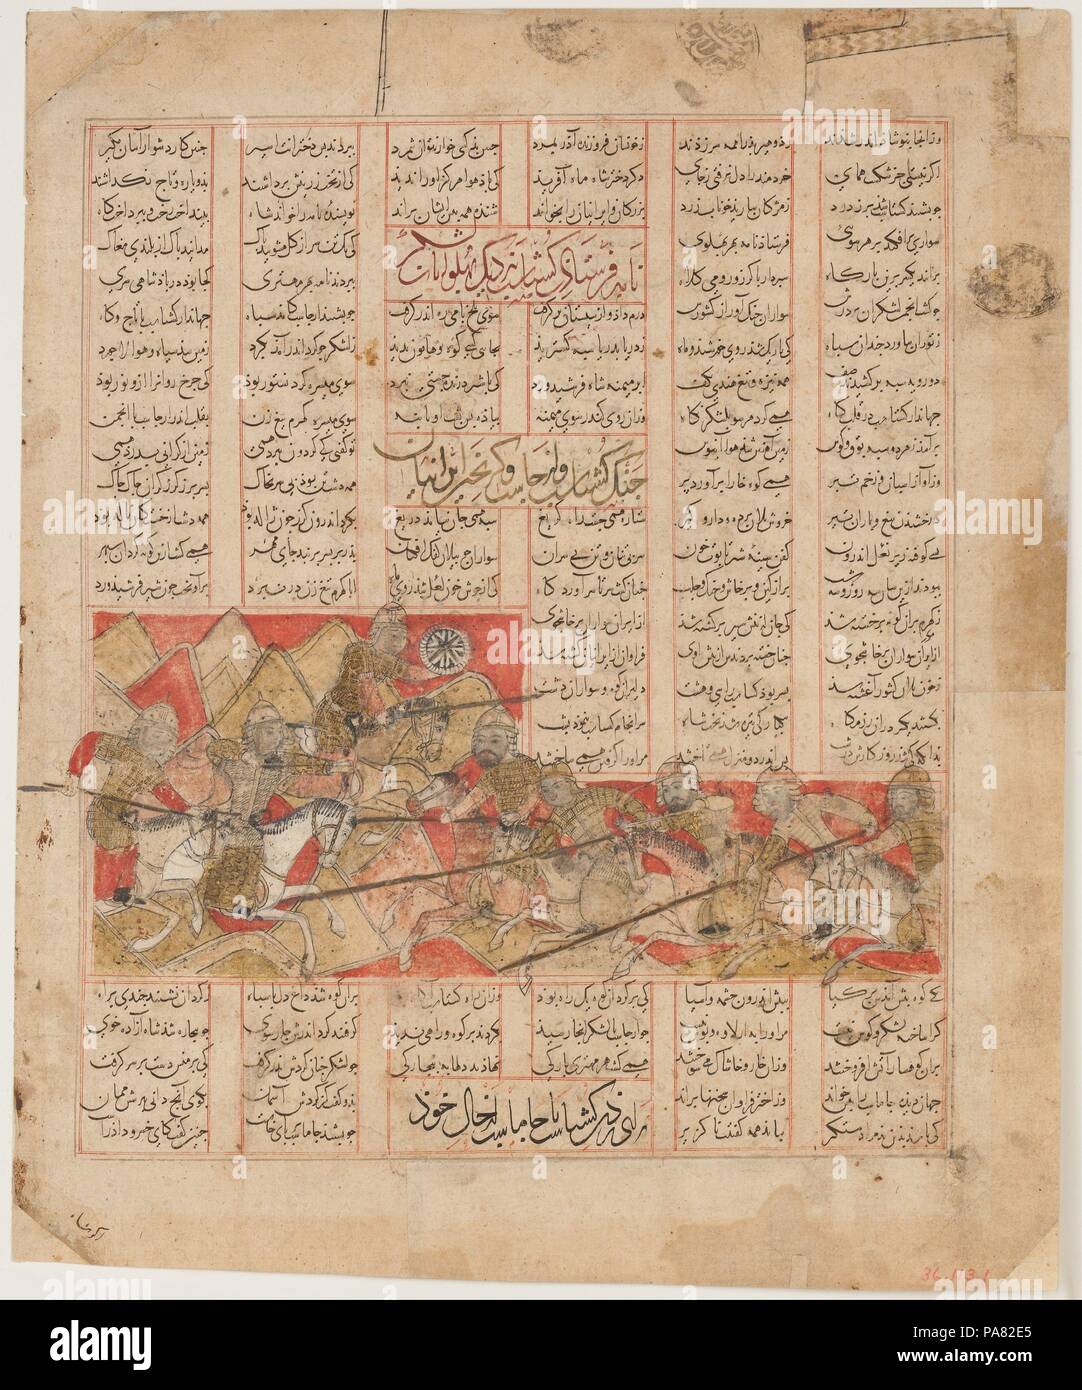 "Les Iraniens et les Armées Turanian au combat', folio d'un Shahnama (Livre des Rois). Auteur : Abu'l Qasim Firdausi (935-1020). Calligraphe : Hasan ibn Muhammad ibn 'Ali ibn ( ?) Husaini, connue sous le nom de al-Mausili. Dimensions : la peinture avec bloc de texte : H. 11 3/8 in. (28,9 cm) W. 9 9/16 in. (24,3 cm) Page : H. 13 7/8 in. (35,2 cm) W. 11 7/16 po. (29,1 cm) TMC : H. 19 1/4 in. (48,9 cm) 14 1/4 in. W. (36,2 cm). Mécène : commandé par al-Hasan Qawam al-Dawla wa'l-Din (ca. 1303-57). Date : A.H. 741/A.D. 1341. Musée : Metropolitan Museum of Art, New York, USA. Banque D'Images